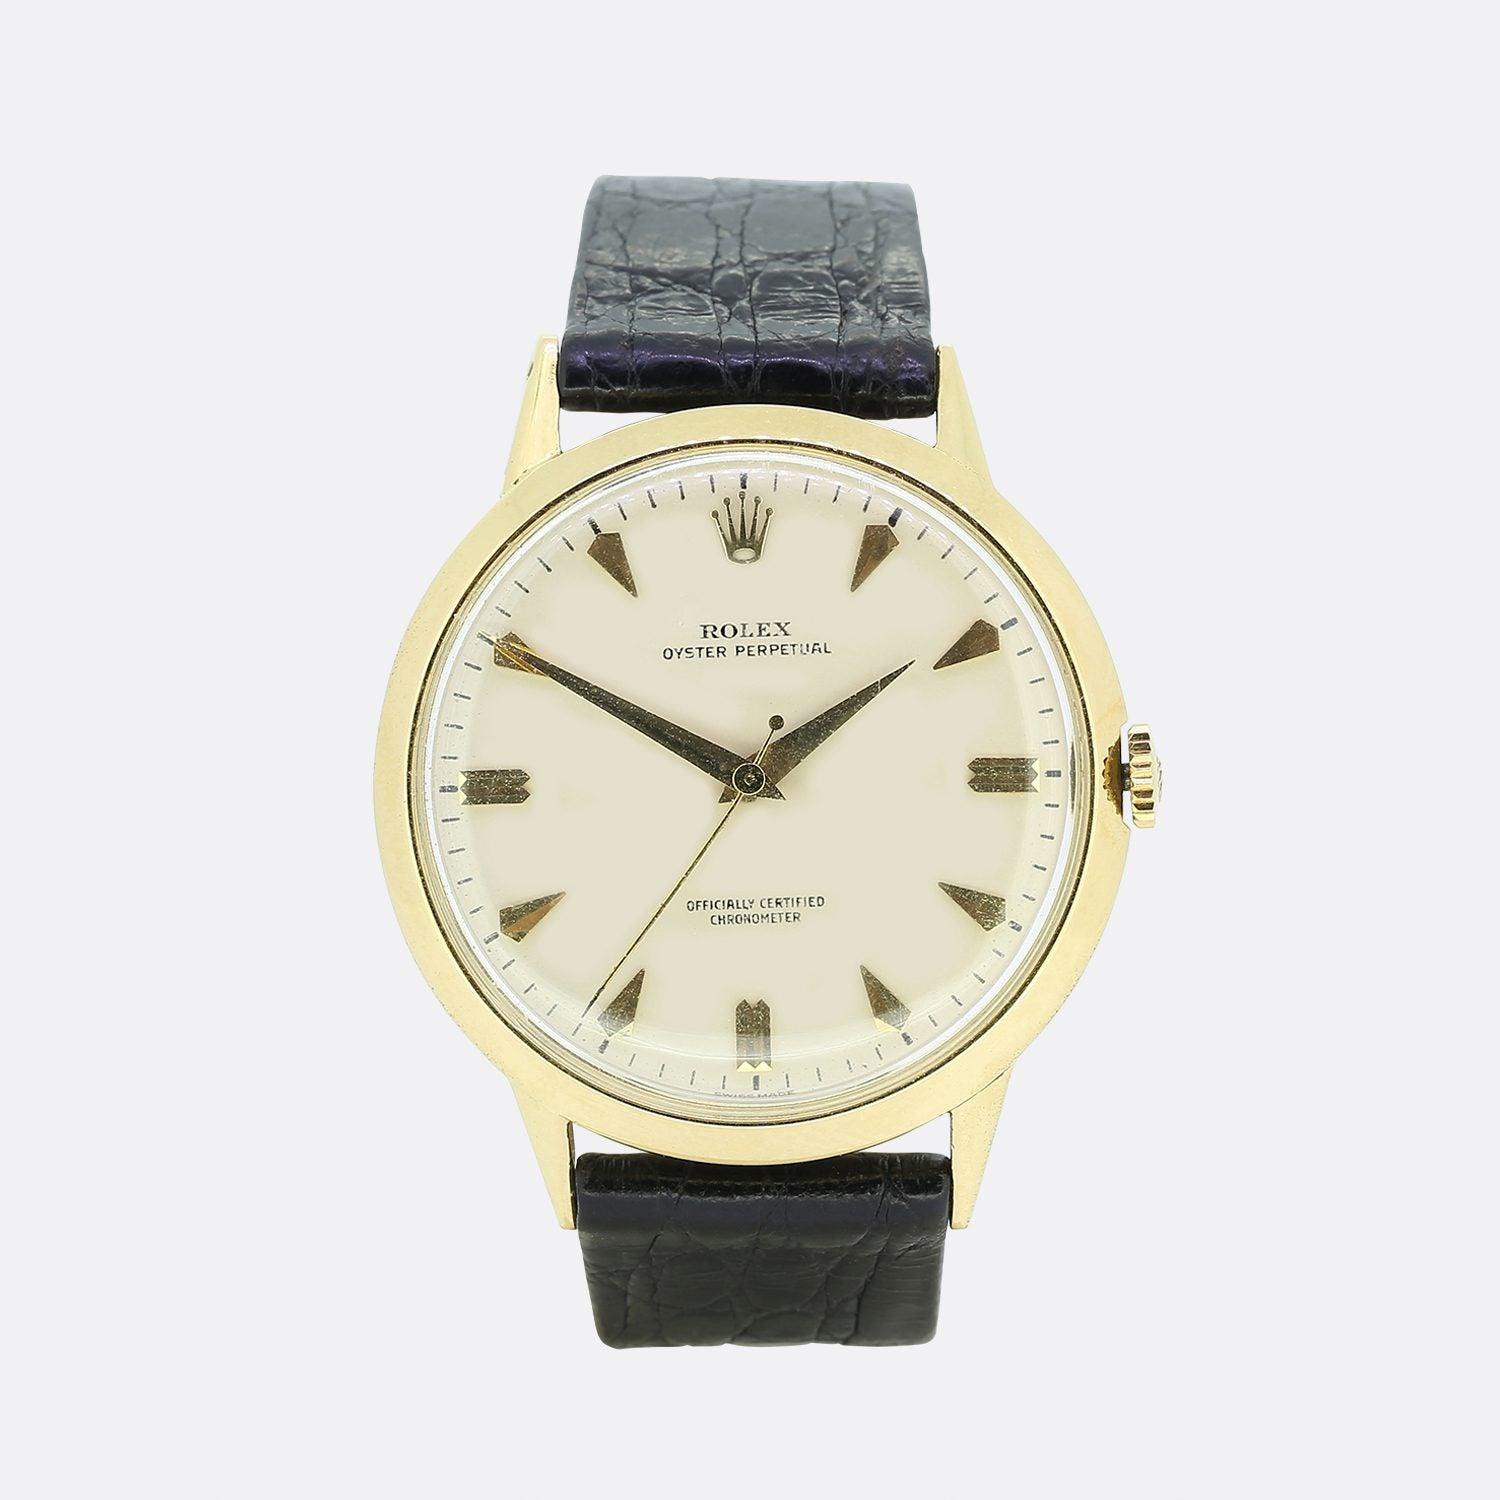 Voici une montre Rolex Oyster Perpetual d'époque, jaune 18ct. La montre possède un boîtier en or jaune 18ct, un cadran crème avec des index en or et la couronne Rolex à 12 heures. La montre comporte toutes ses pièces d'origine et le logo Rolex est